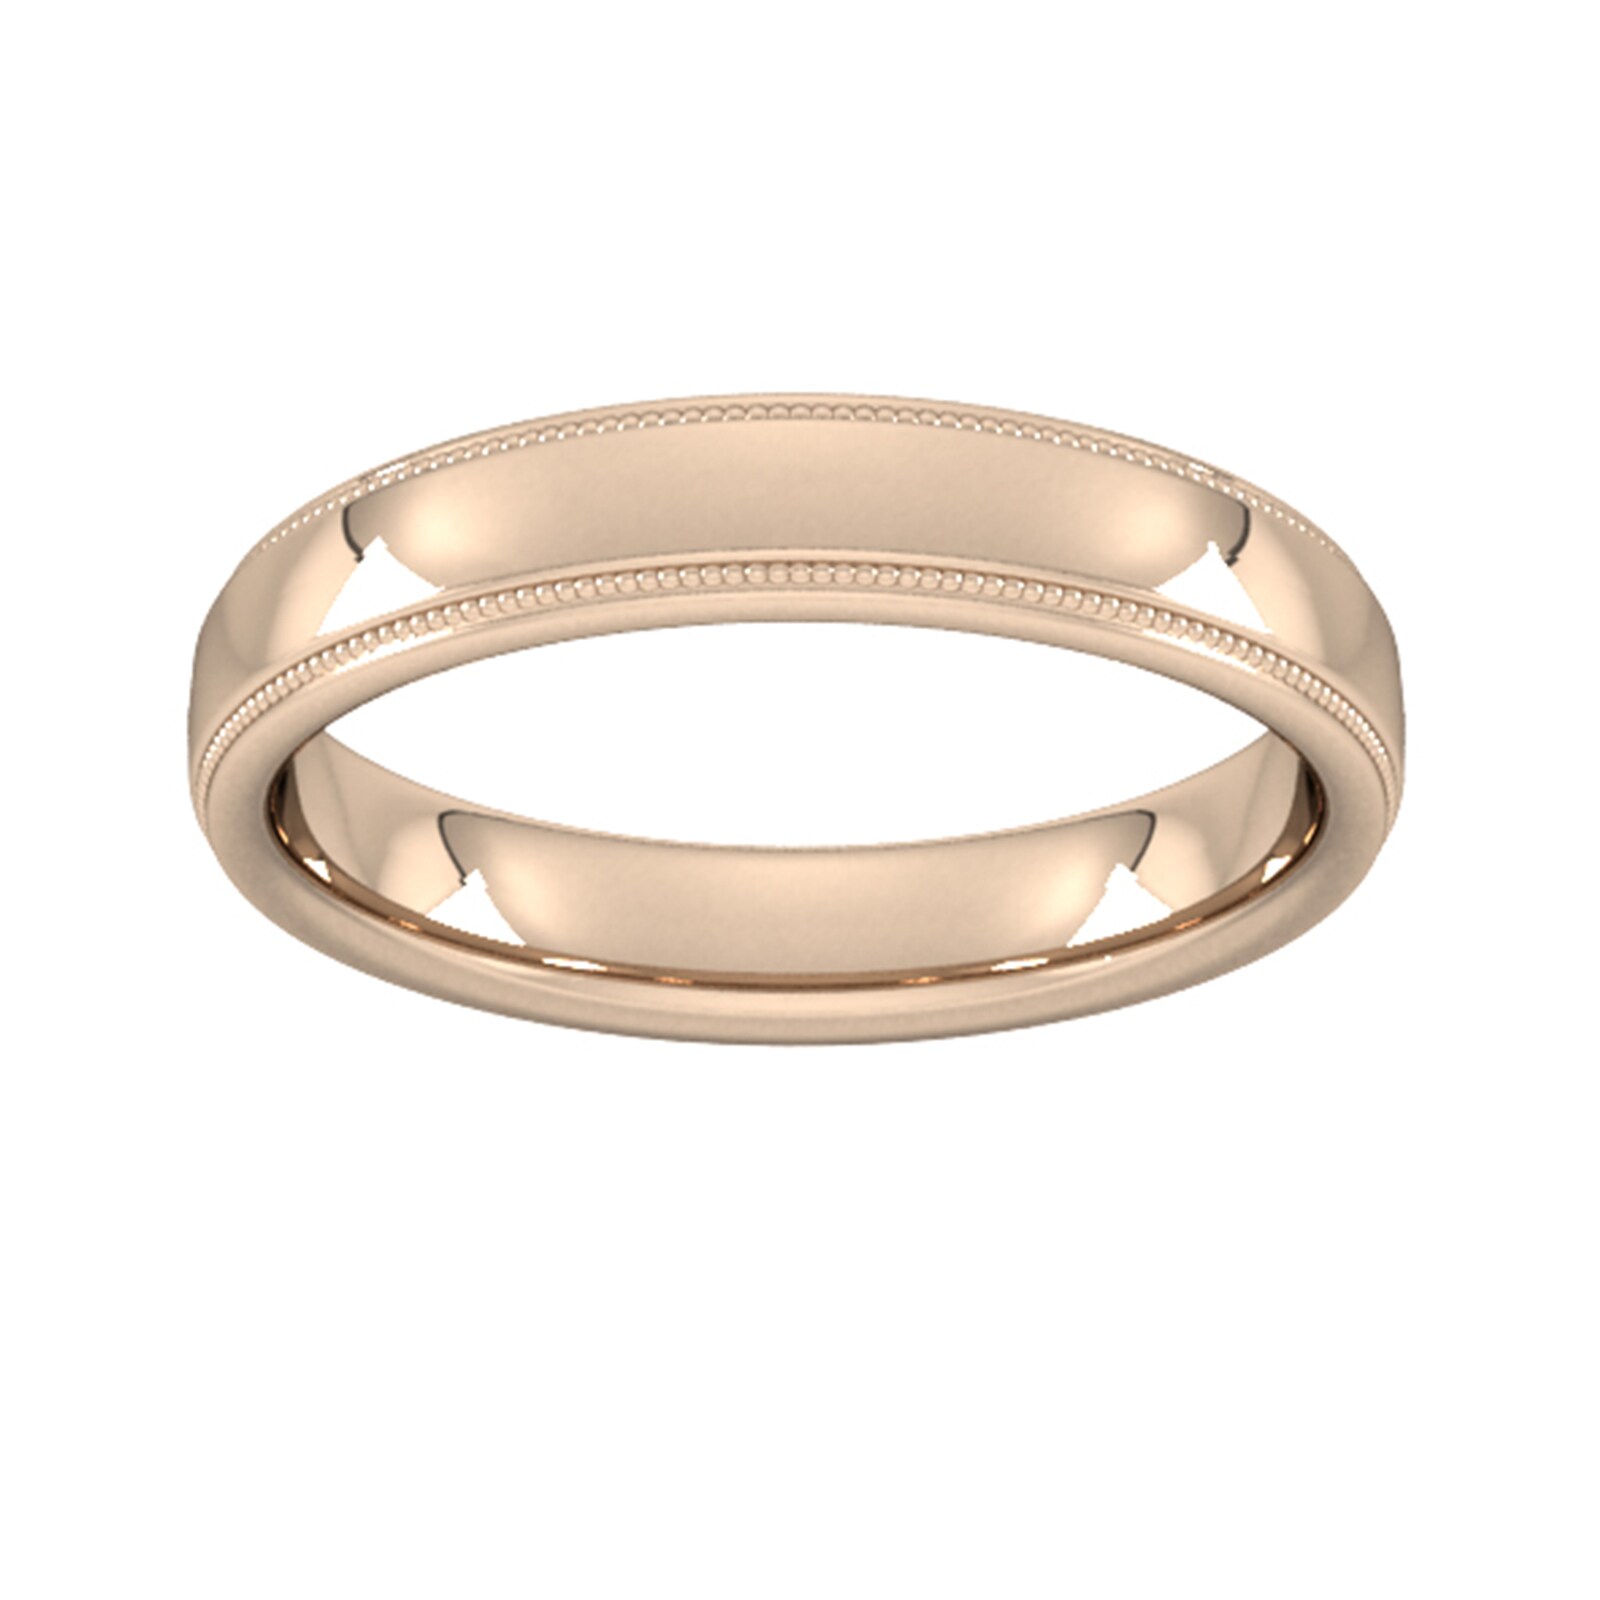 4mm Slight Court Extra Heavy Milgrain Edge Wedding Ring In 18 Carat Rose Gold - Ring Size K